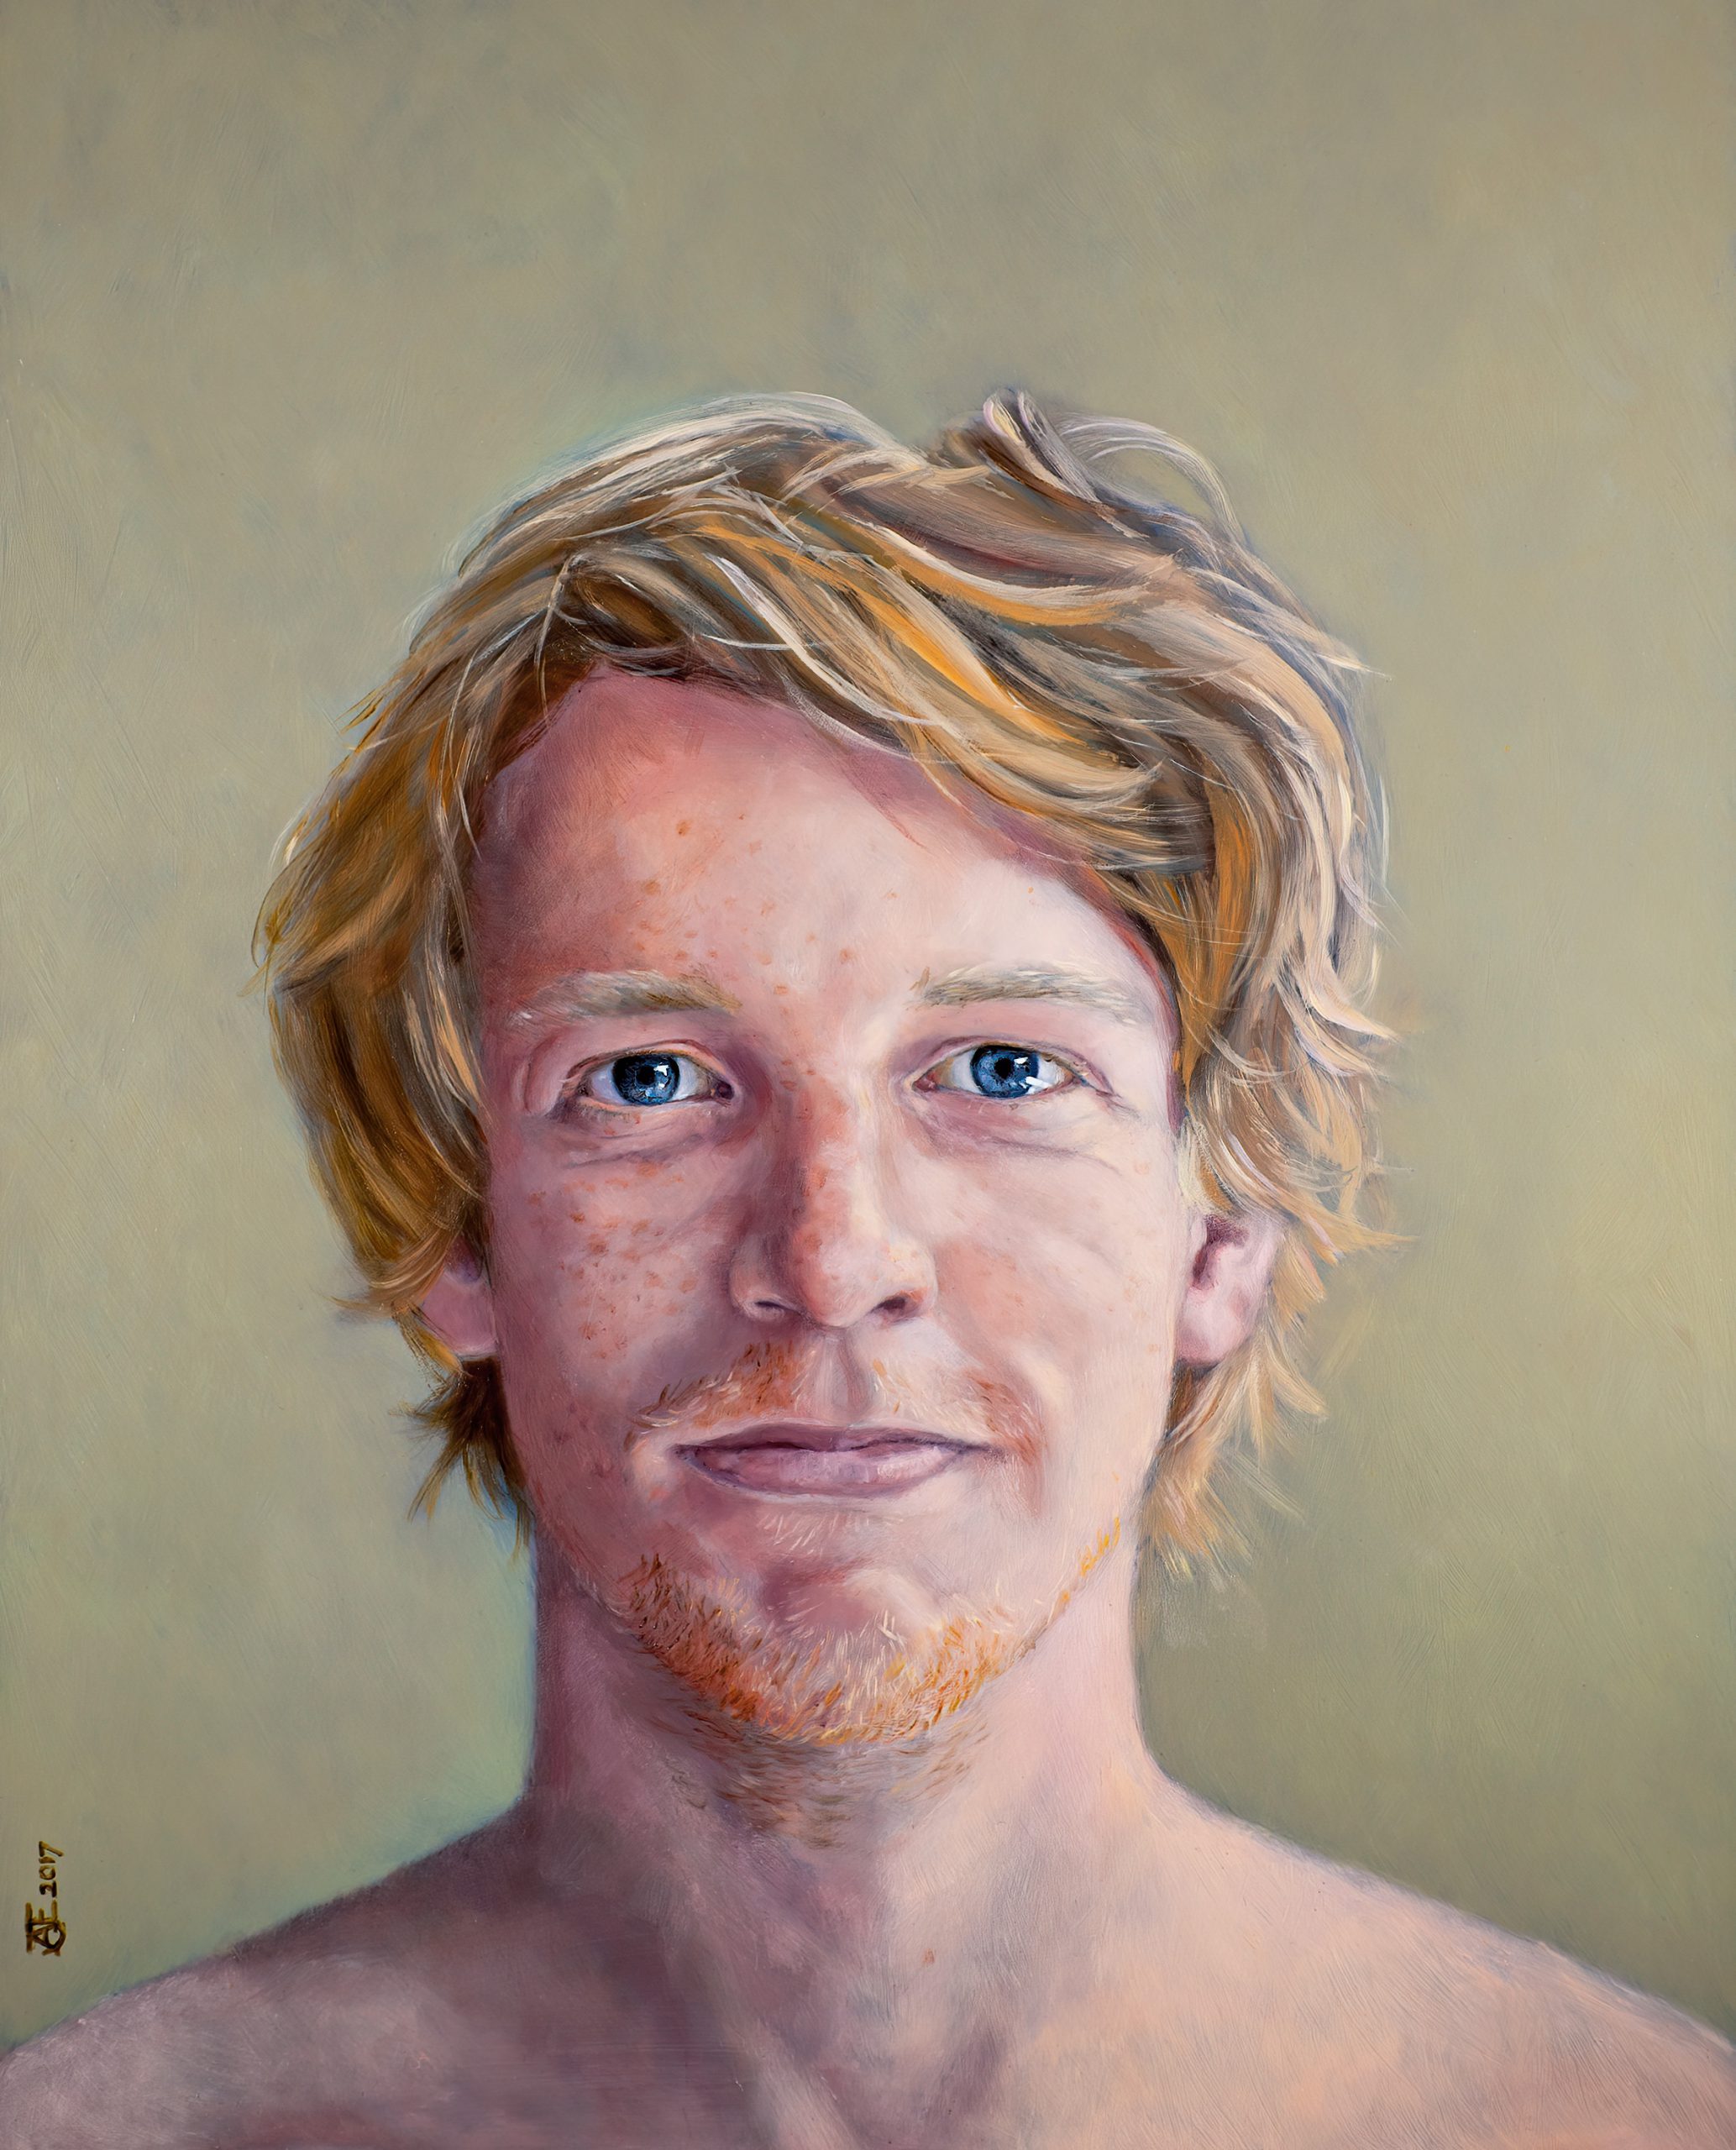 Een olieverfportret op een paneel van 40 x 50 cm, in opdracht geschilderd, toont een jonge man met blond haar genaamd Gerard tegen een lichtgroene achtergrond. Dit kunstwerk is in 2017 geschilderd door portretschilder Anneke Ensing.